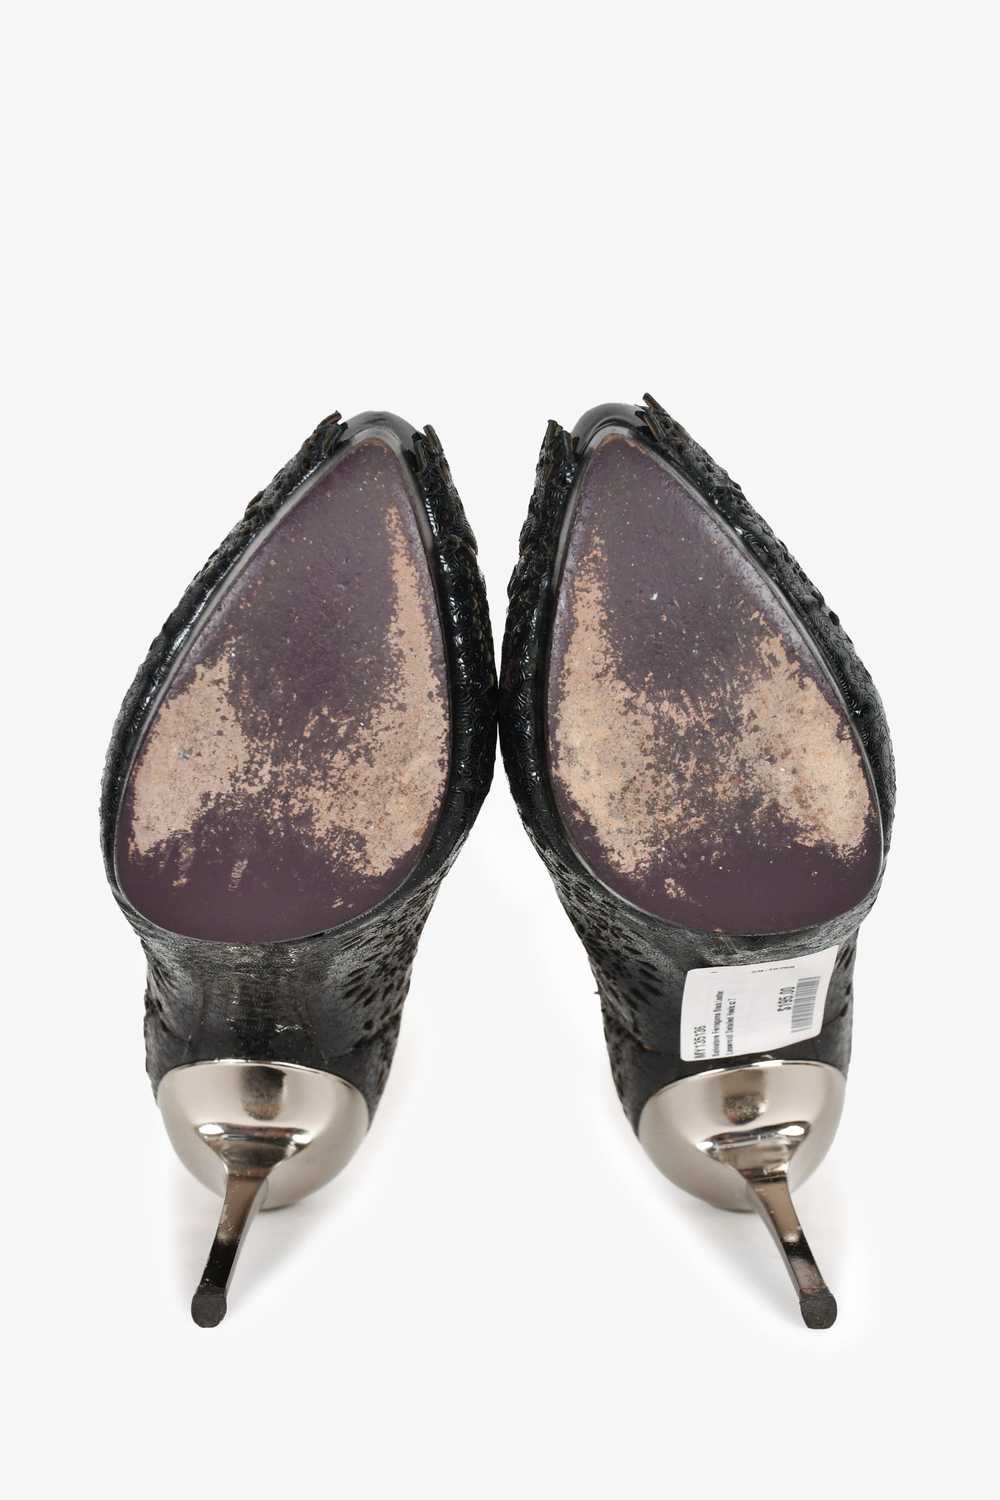 Salvatore Ferragamo Black Leather Perforated Heel… - image 6